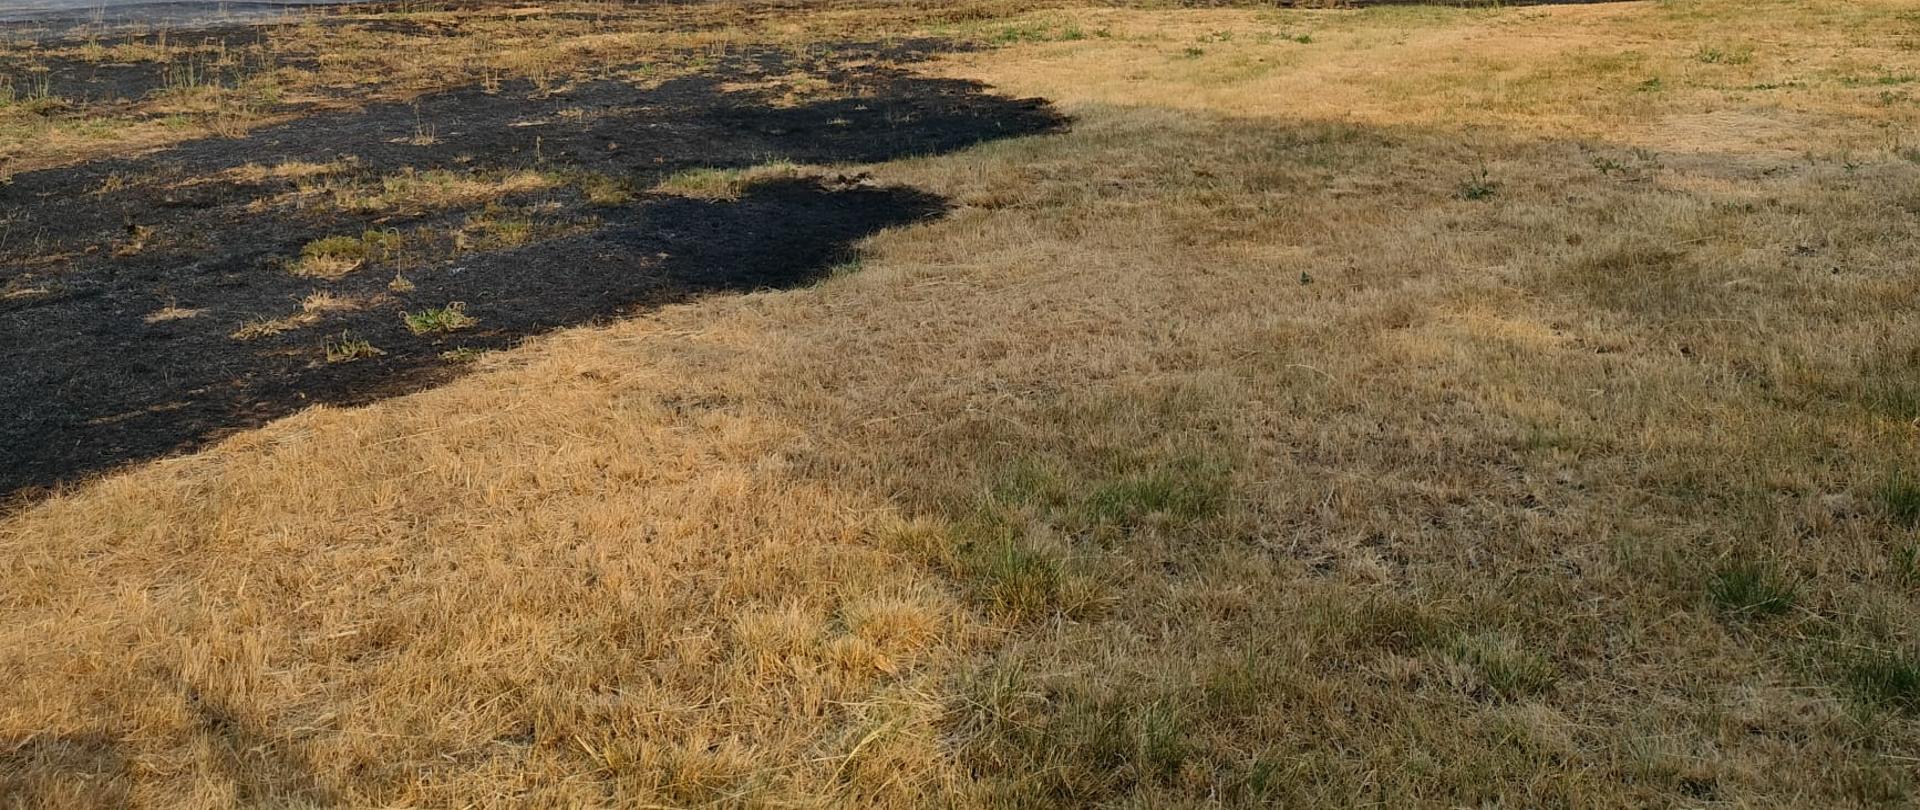 Zdjęcie przedstawia spaloną trawę na nieużytkach